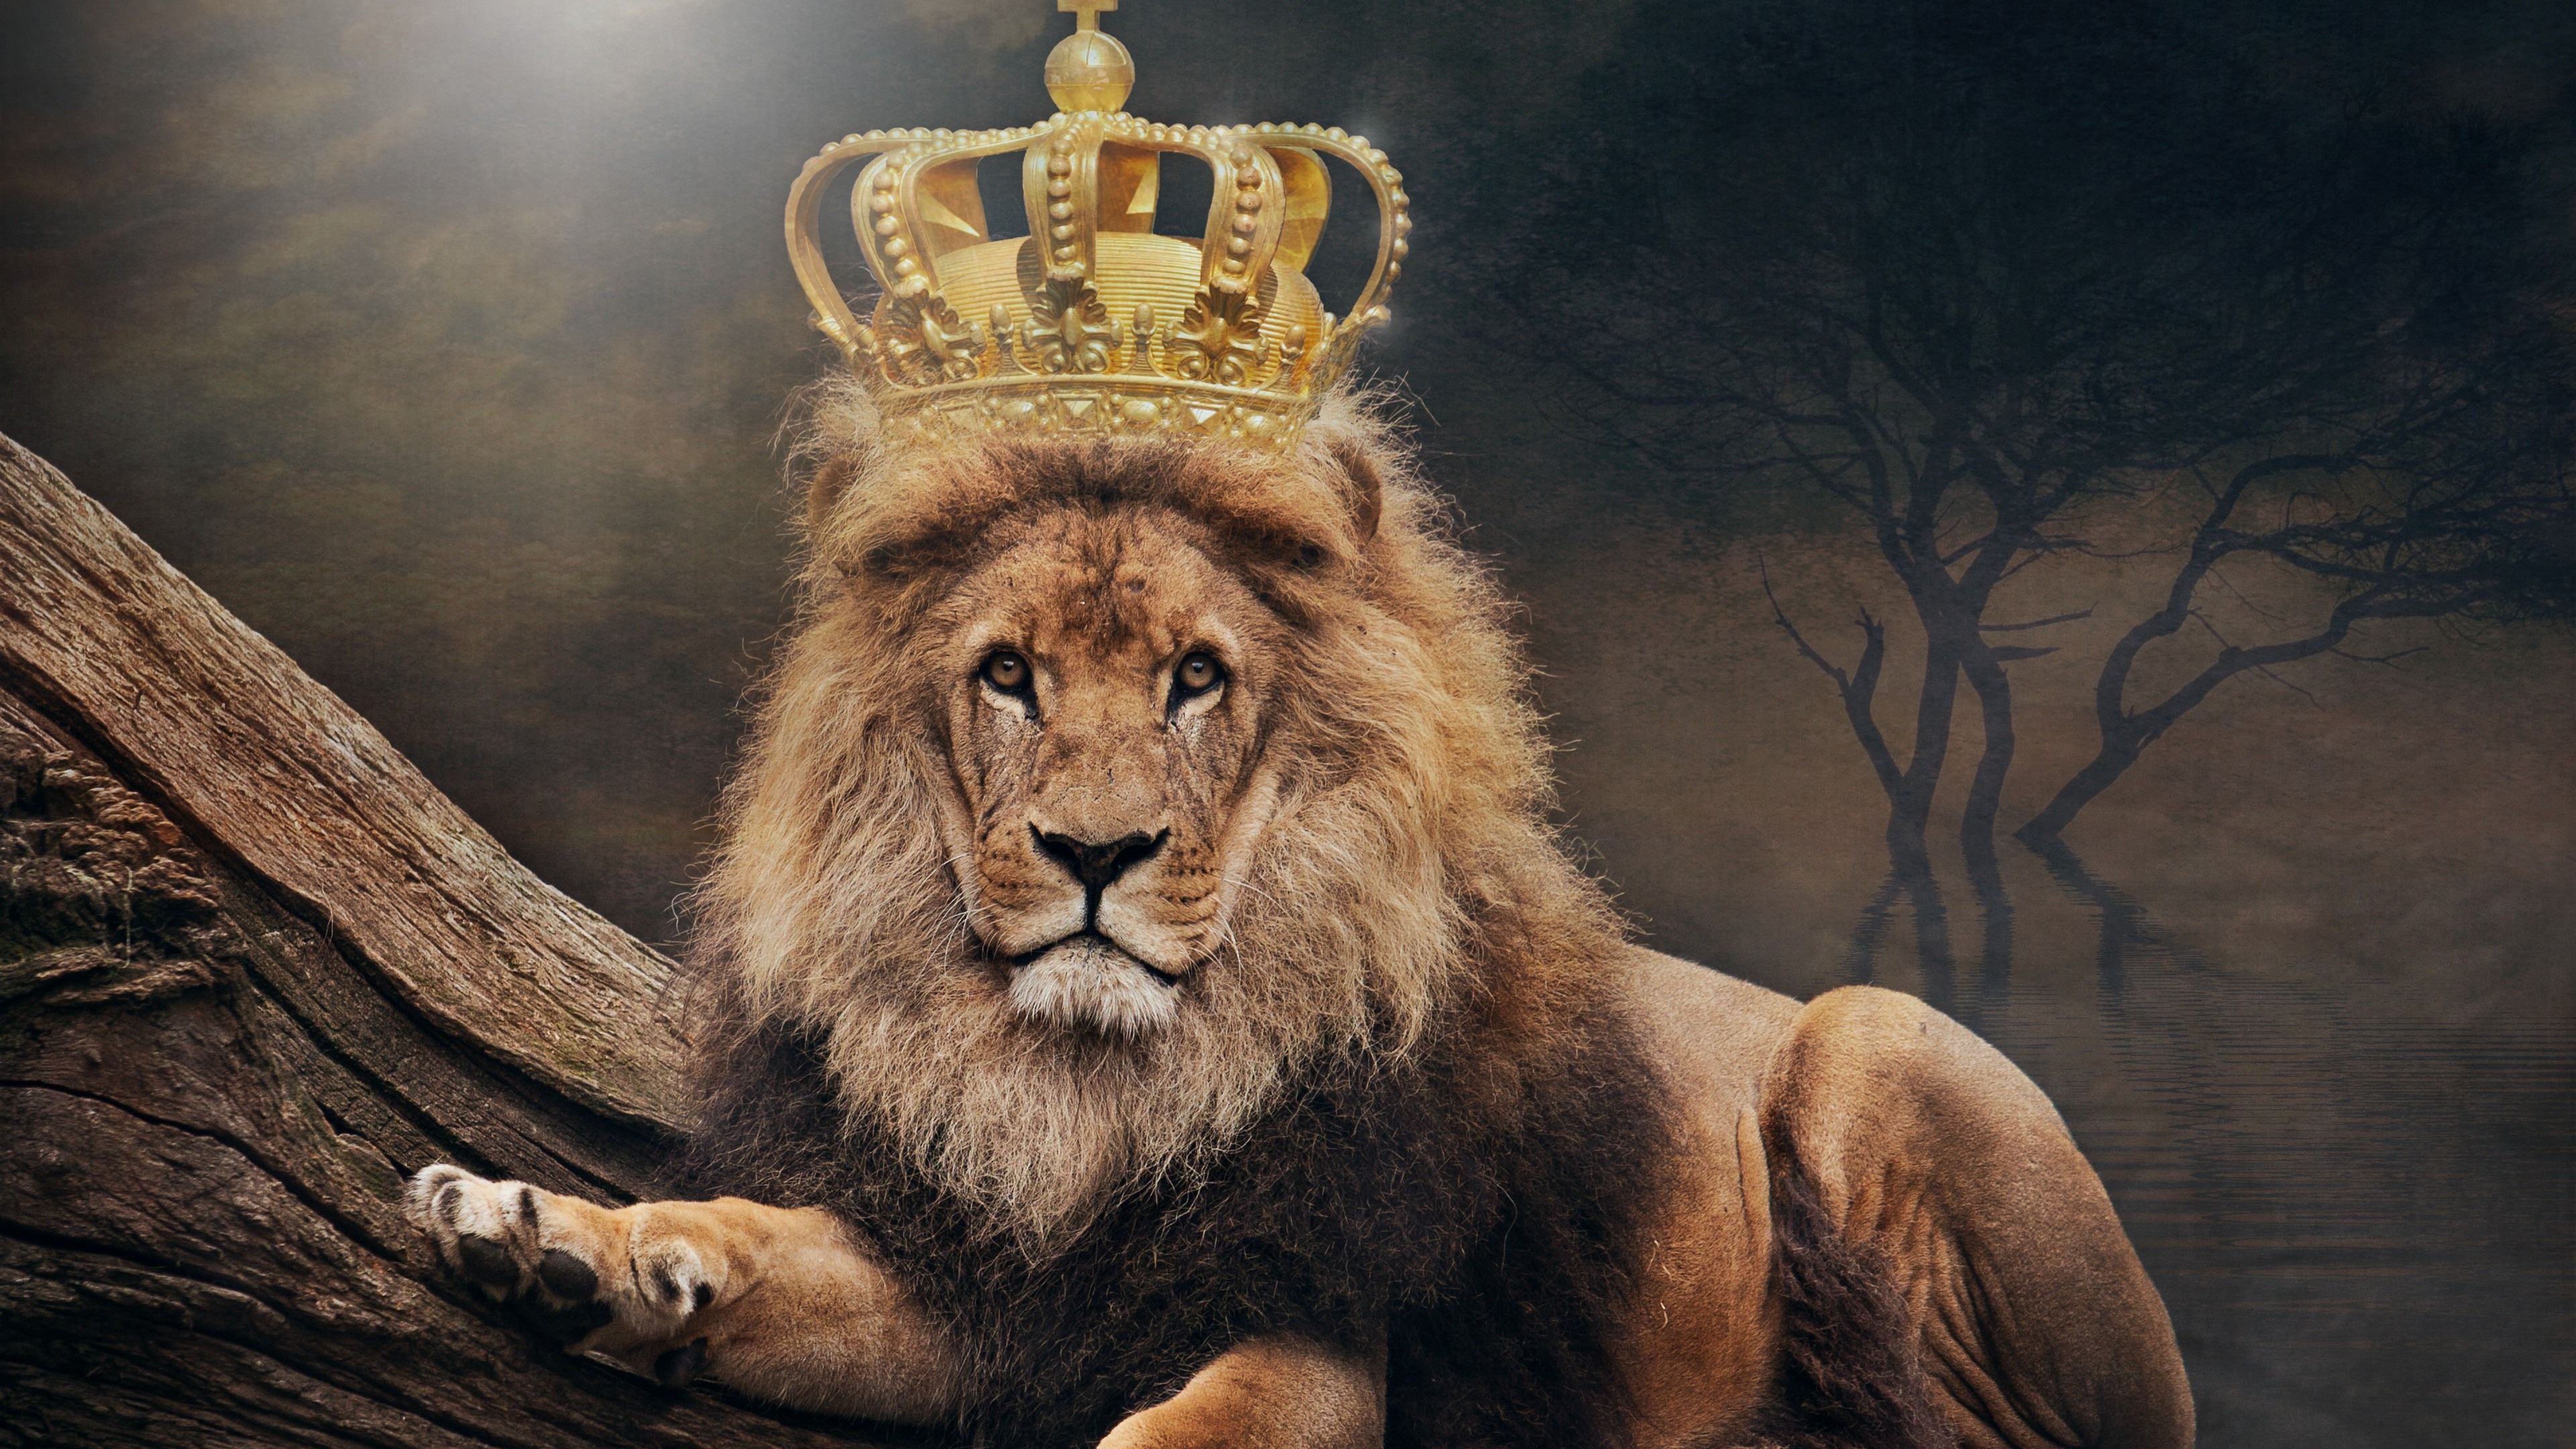 دانلود عکس پروفایل شیر سلطان جنگل به همراه تاج پادشاهی 